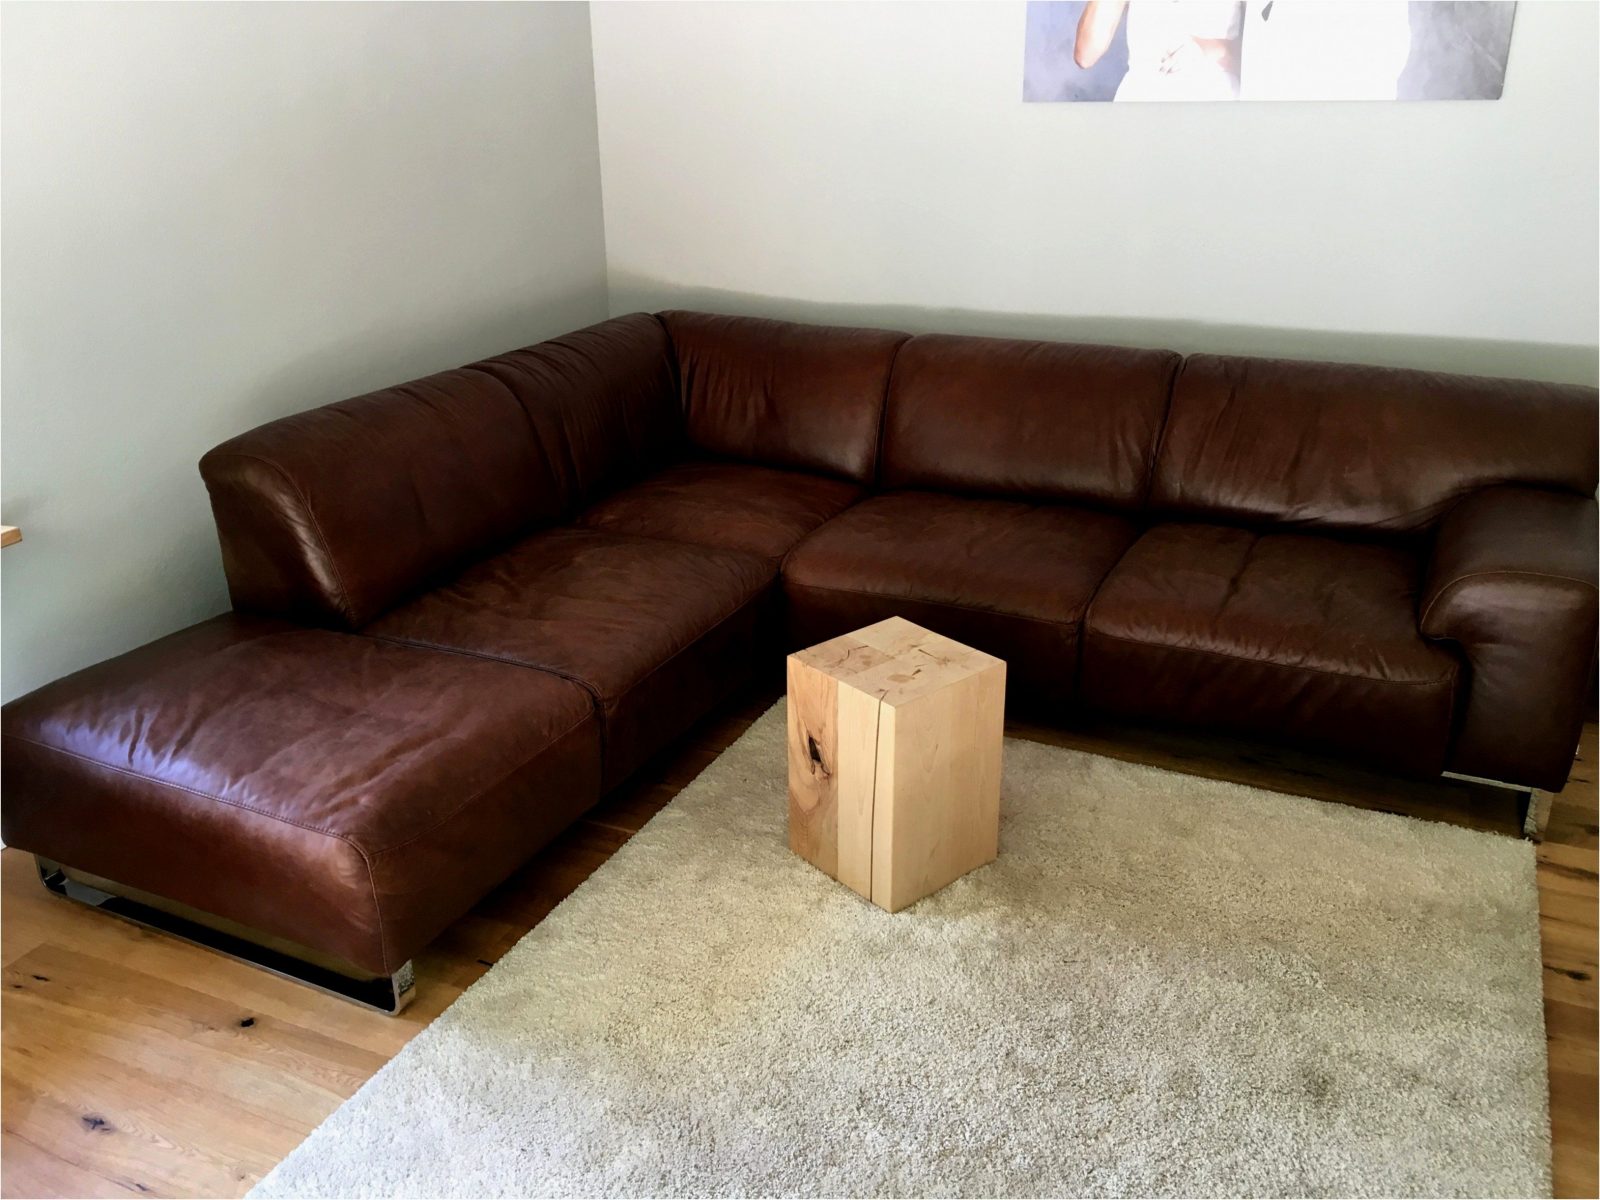 Beste Hervorragend Couch W Schillig Polstermabel Genial Black Label von W Schillig Black Label Photo